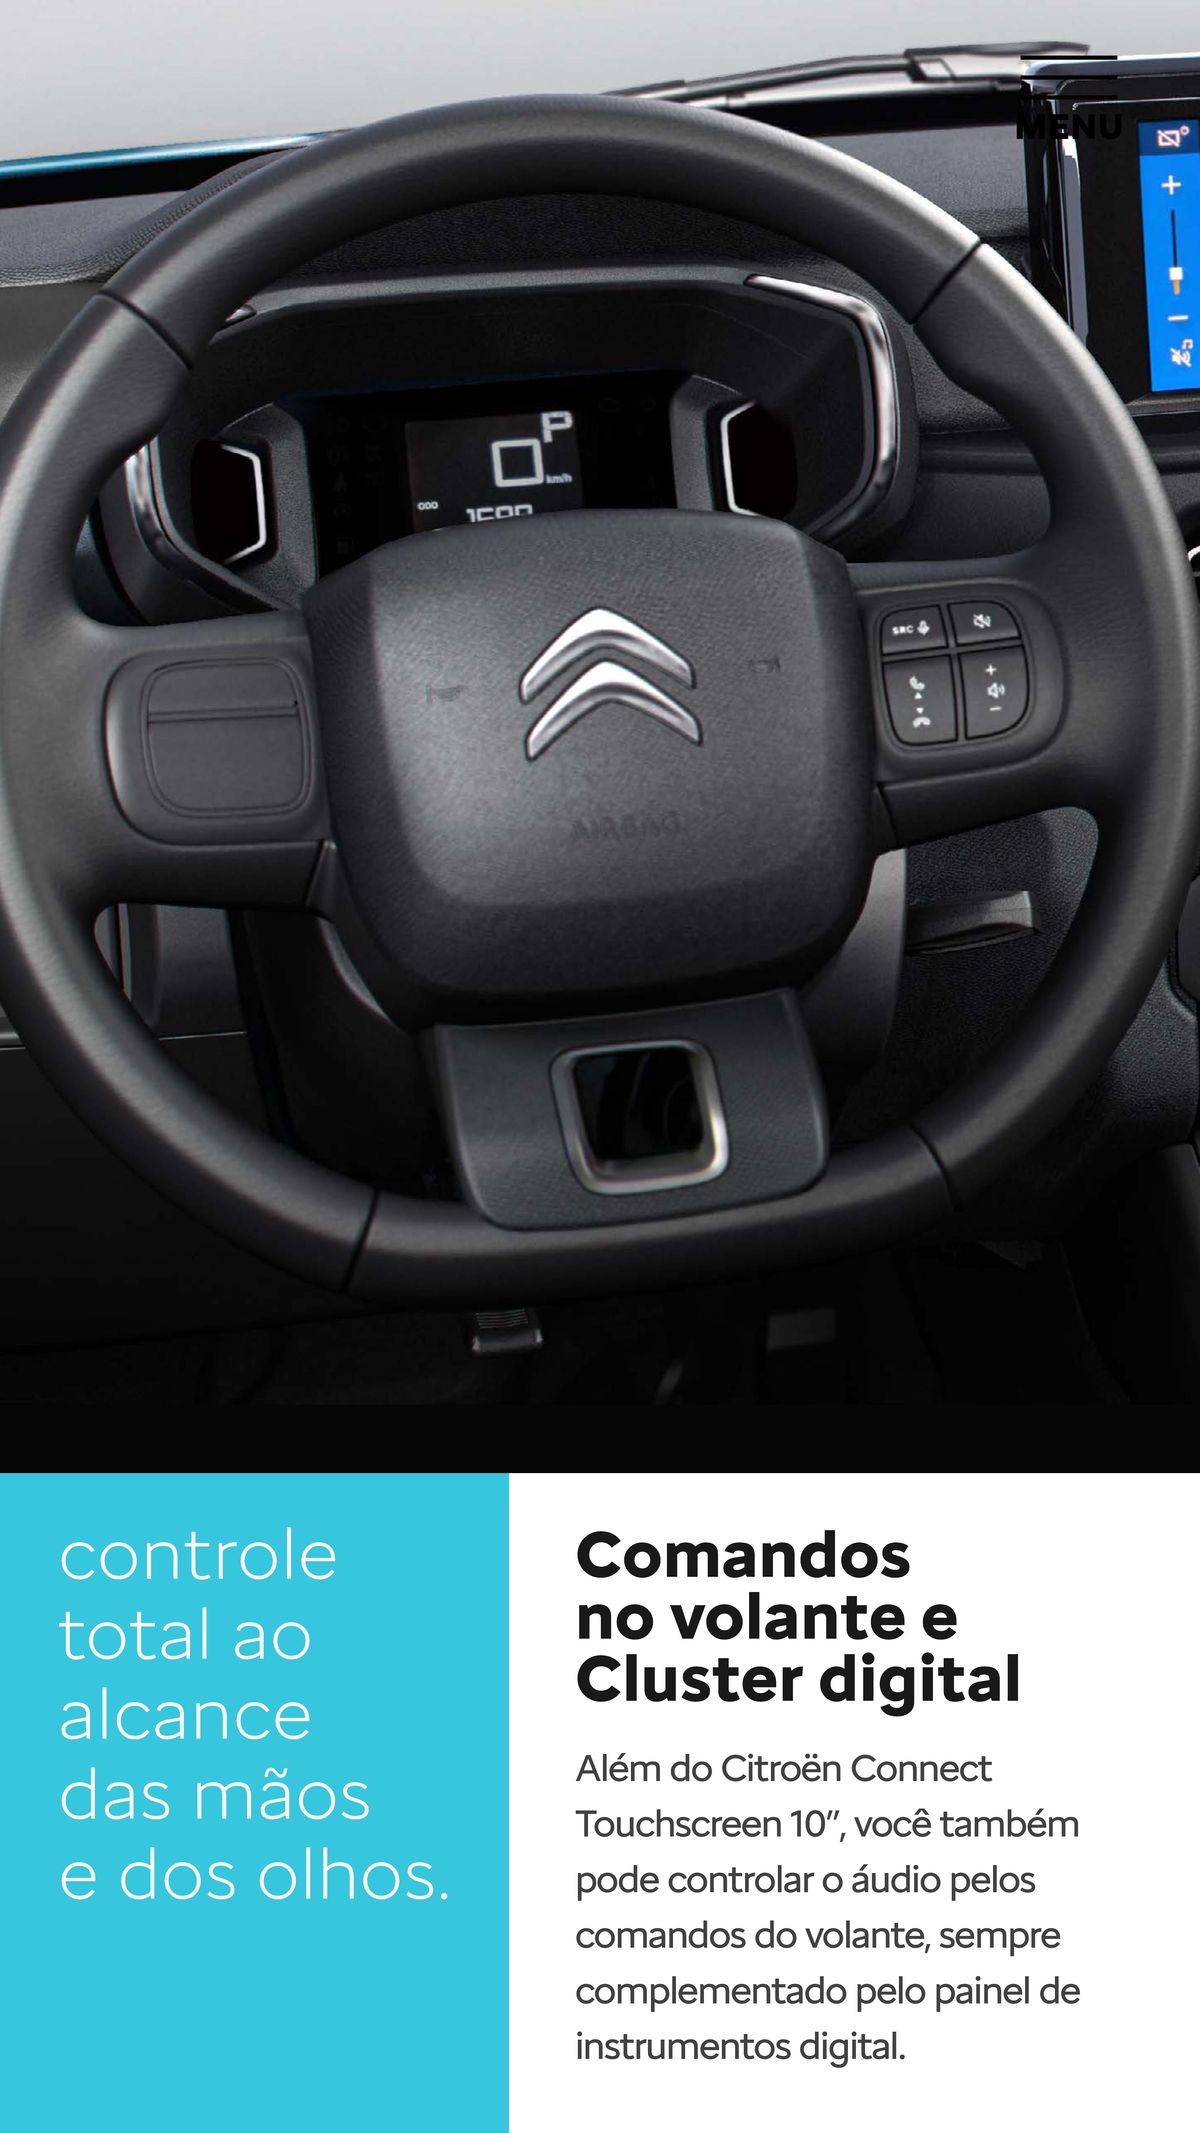 Controle das mãos e dos olhos: Comandos no volante e Cluster digital